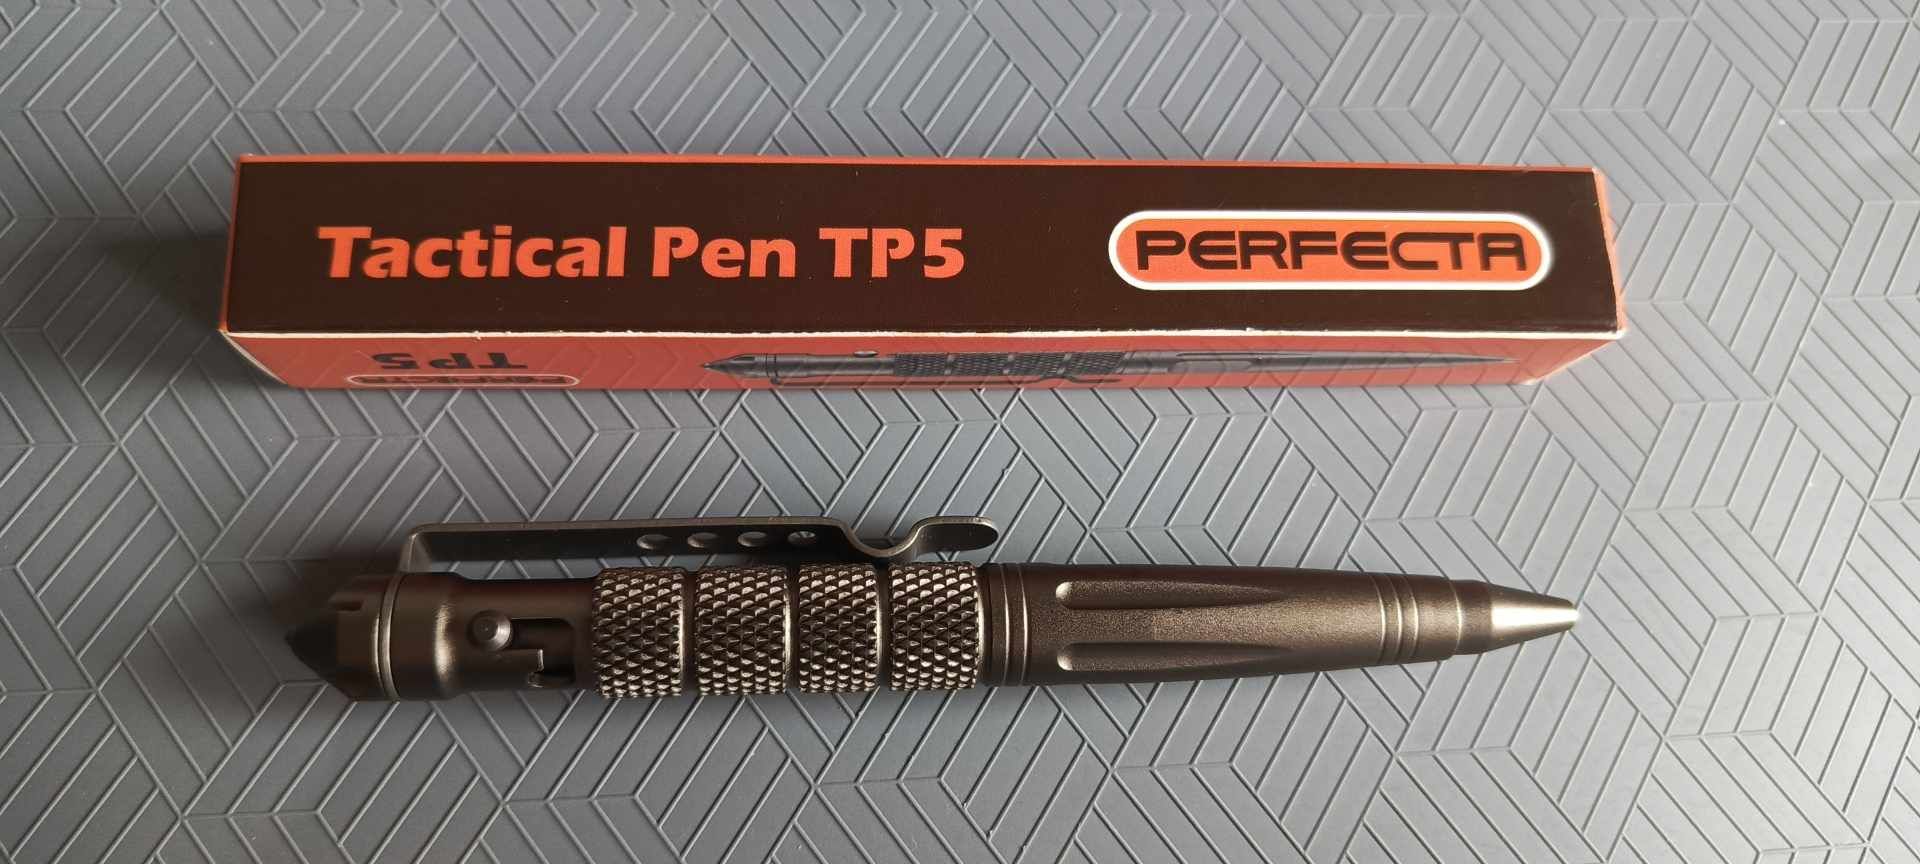 Długopis taktyczny Perfecta TP5 NOWY